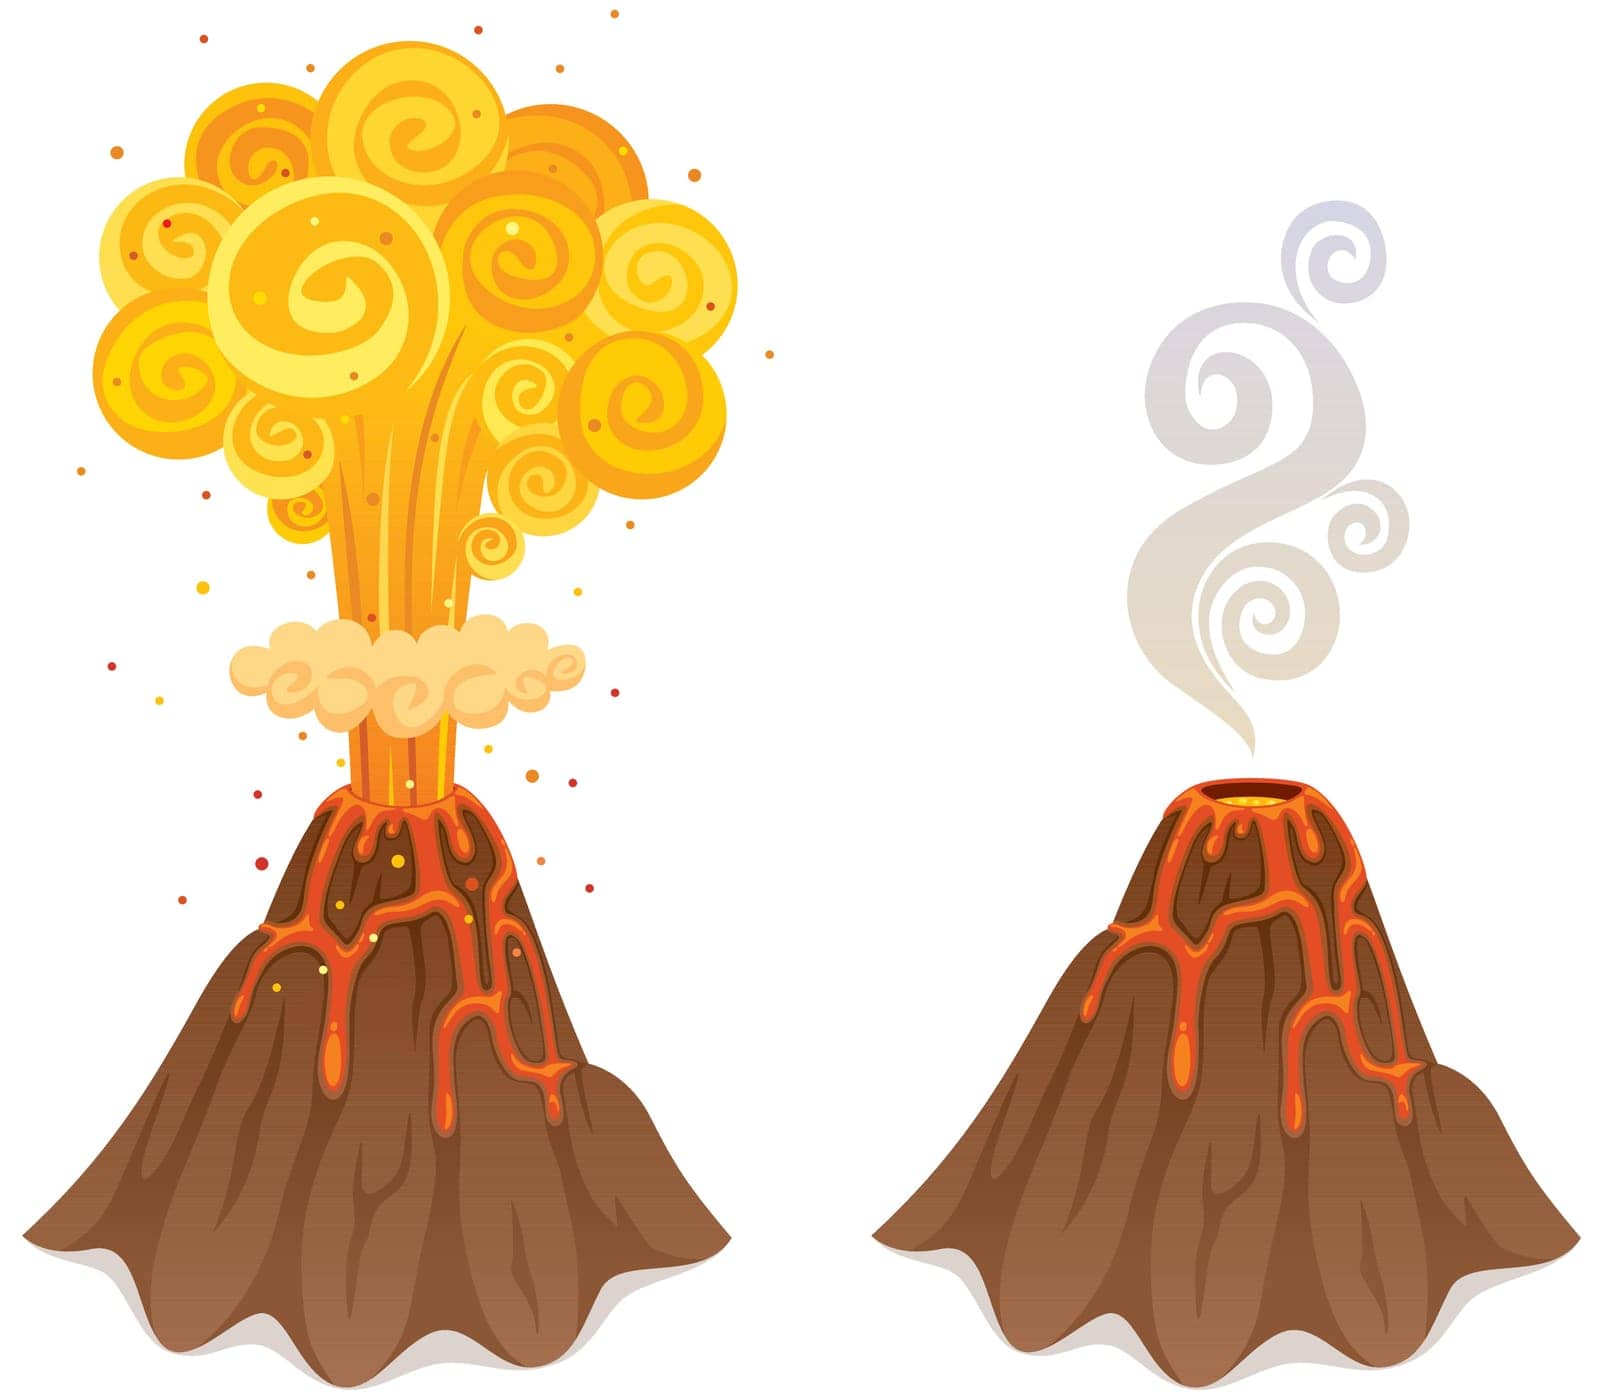 Cartoon illustration of volcano in 2 versions.